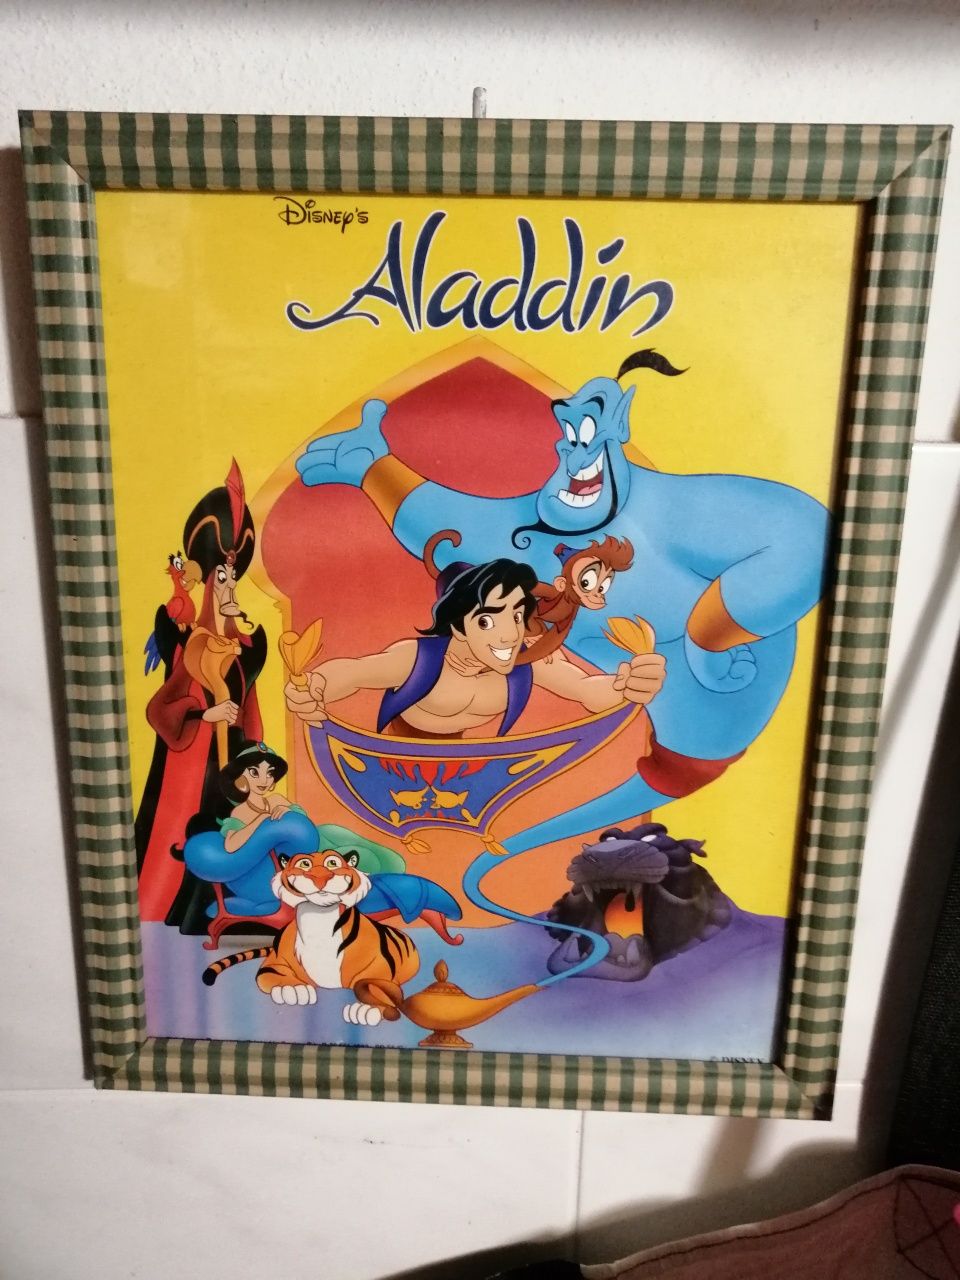 Quadro do filme Aladdin